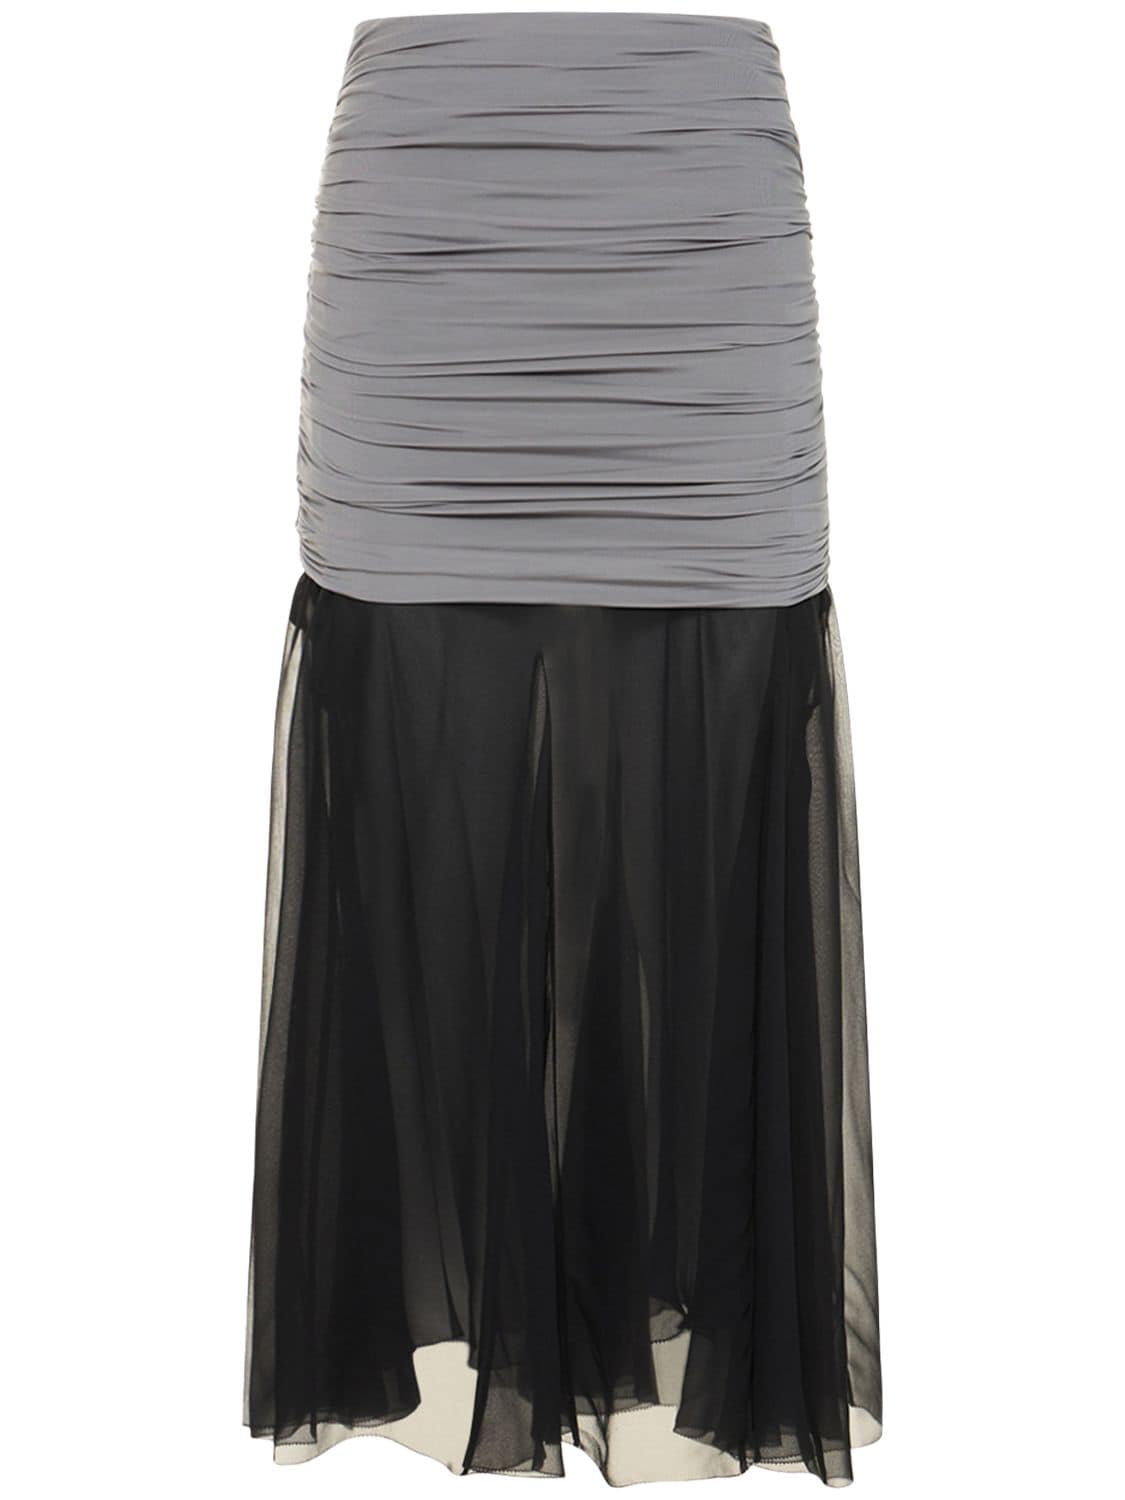 Image of Jersey Chiffon Silk Long Skirt